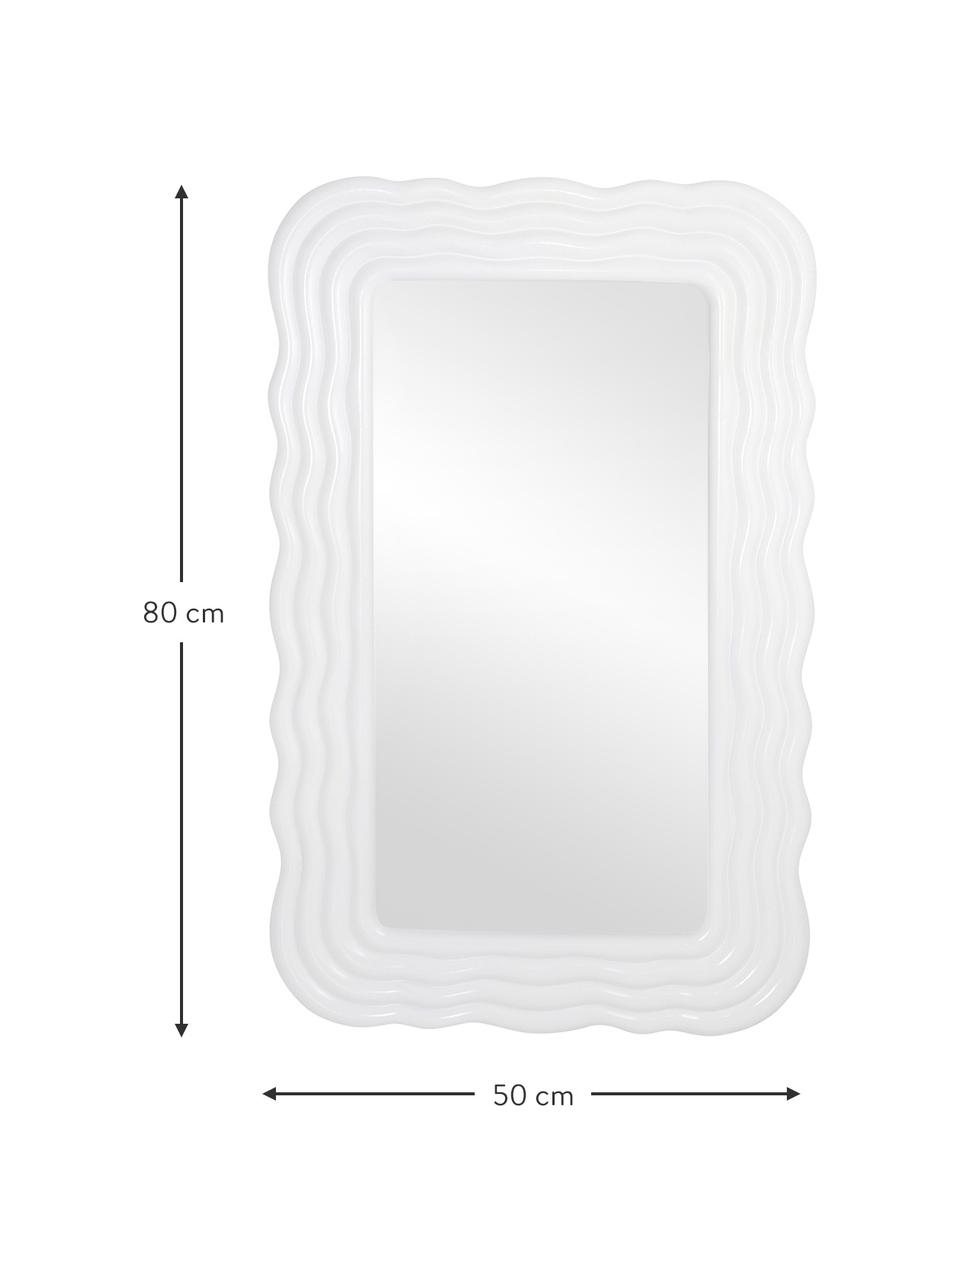 Nástěnné zrcadlo s rámem z umělé hmoty Huntington, Bílá, Š 50 cm, V 80 cm